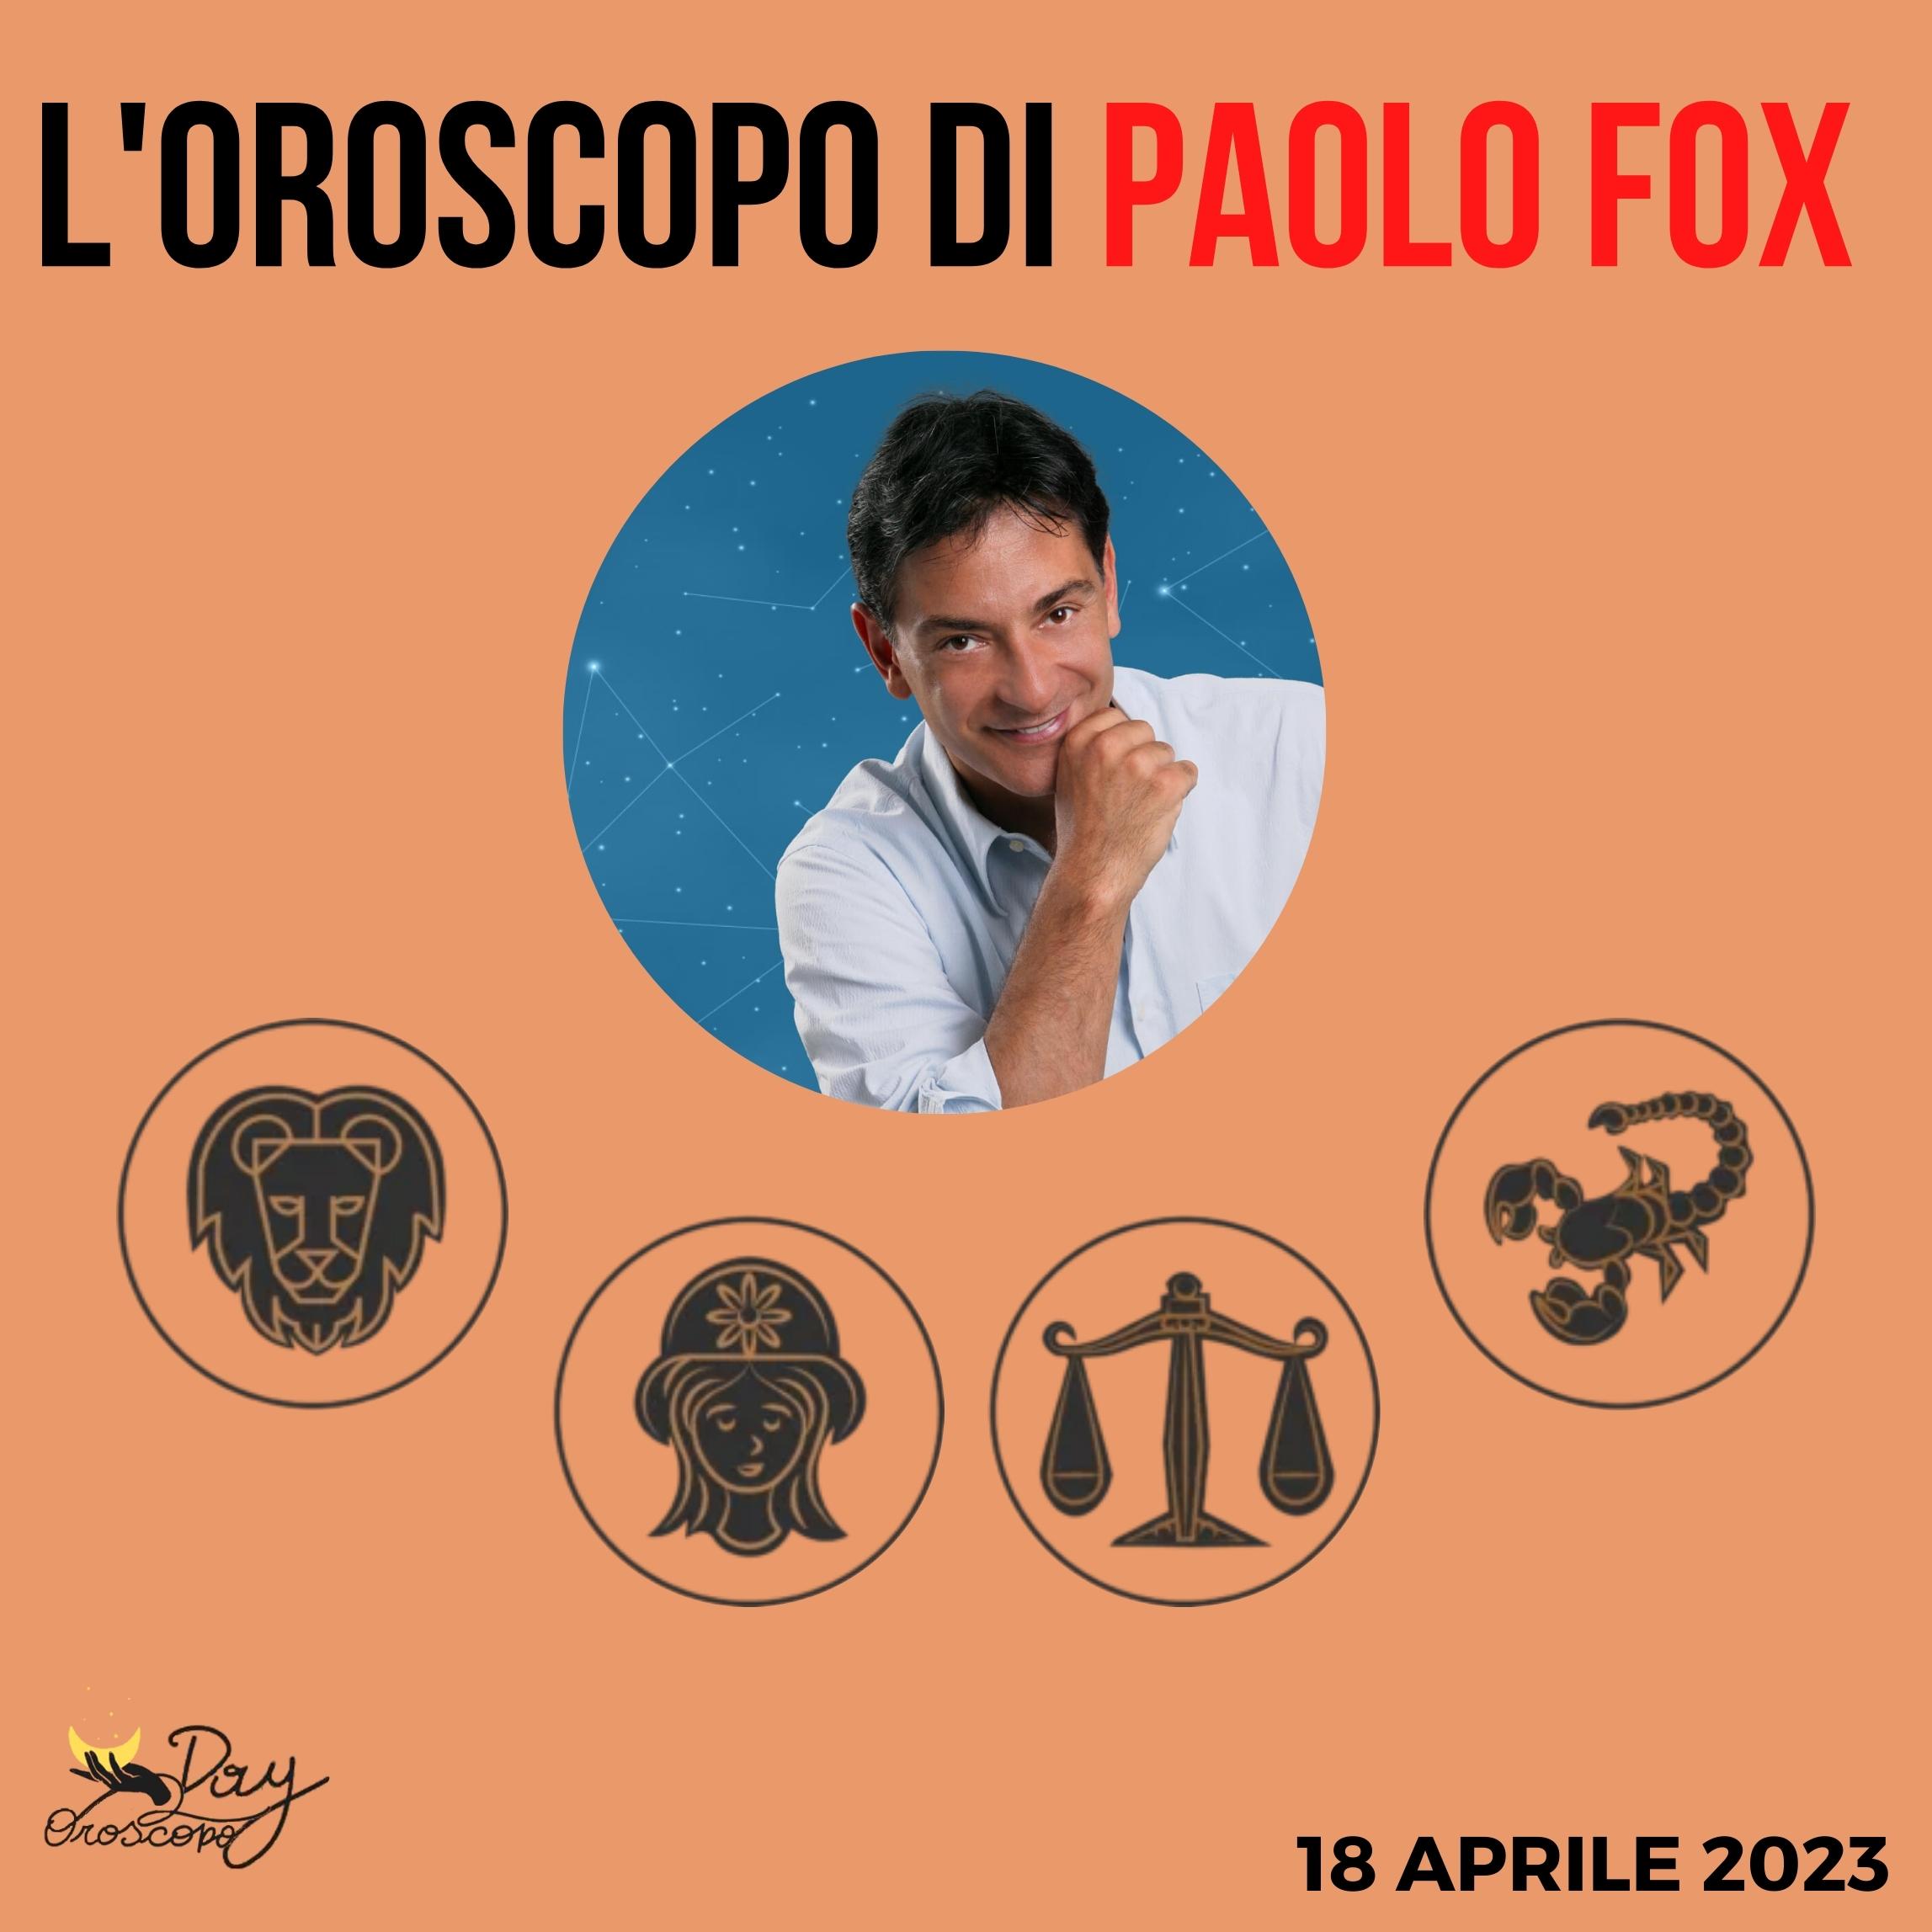 Oroscopo oggi Paolo Fox 18 aprile 2023 Leone Vergine Bilancia Scorpione